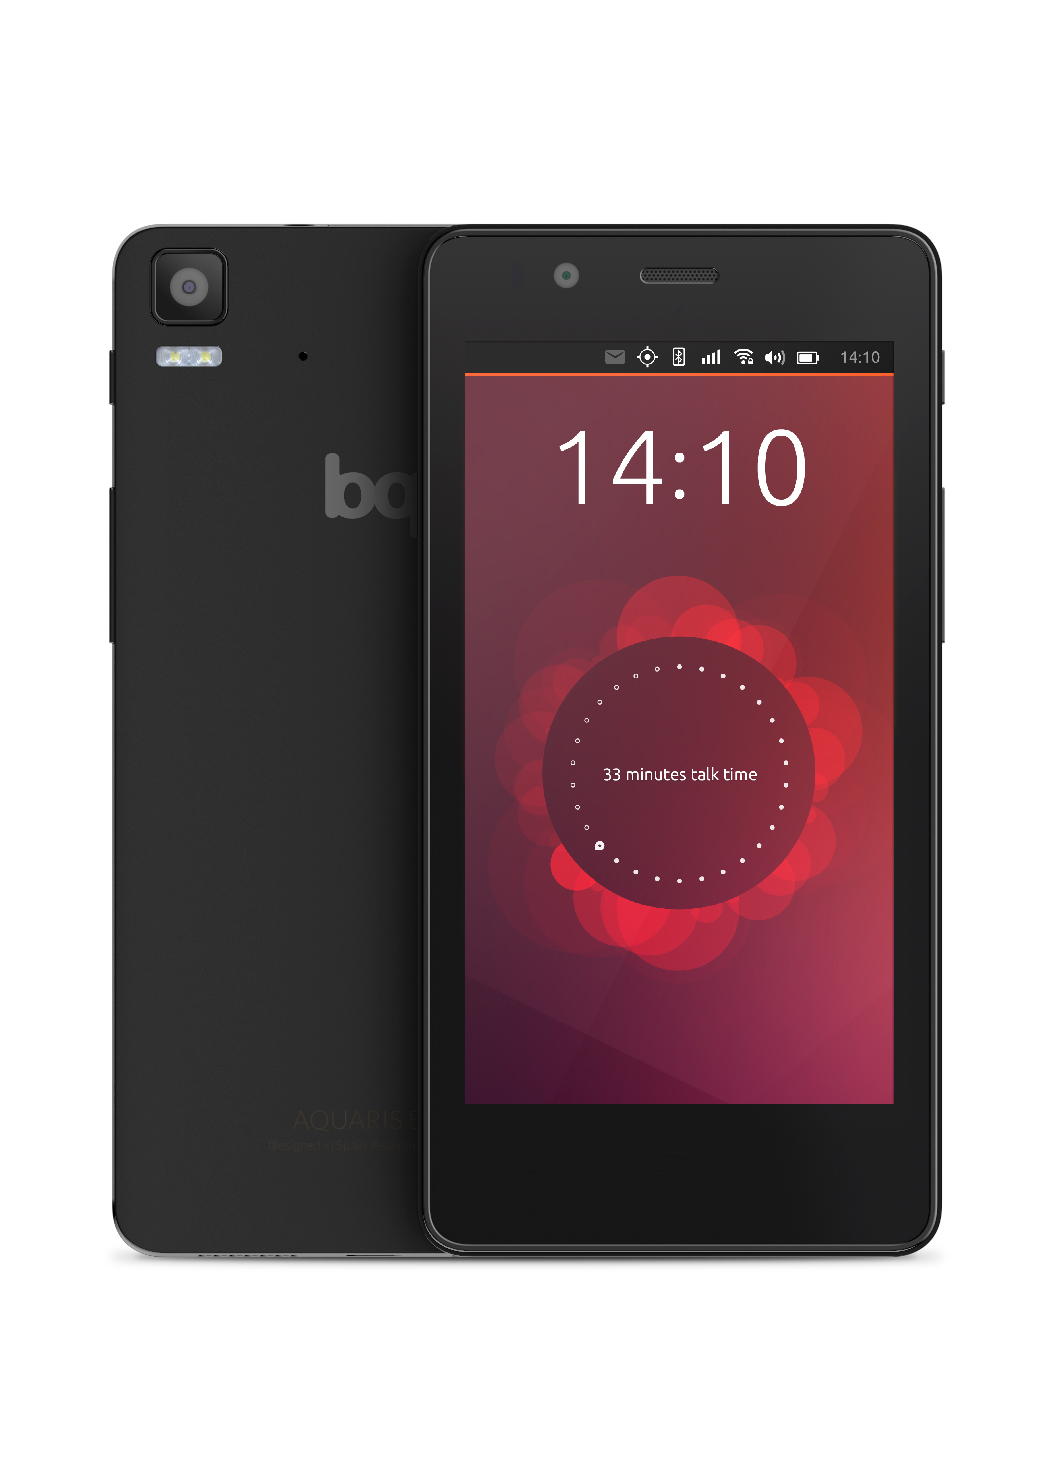 Первый Ubuntu телефон - BQ Aquaris E4.5